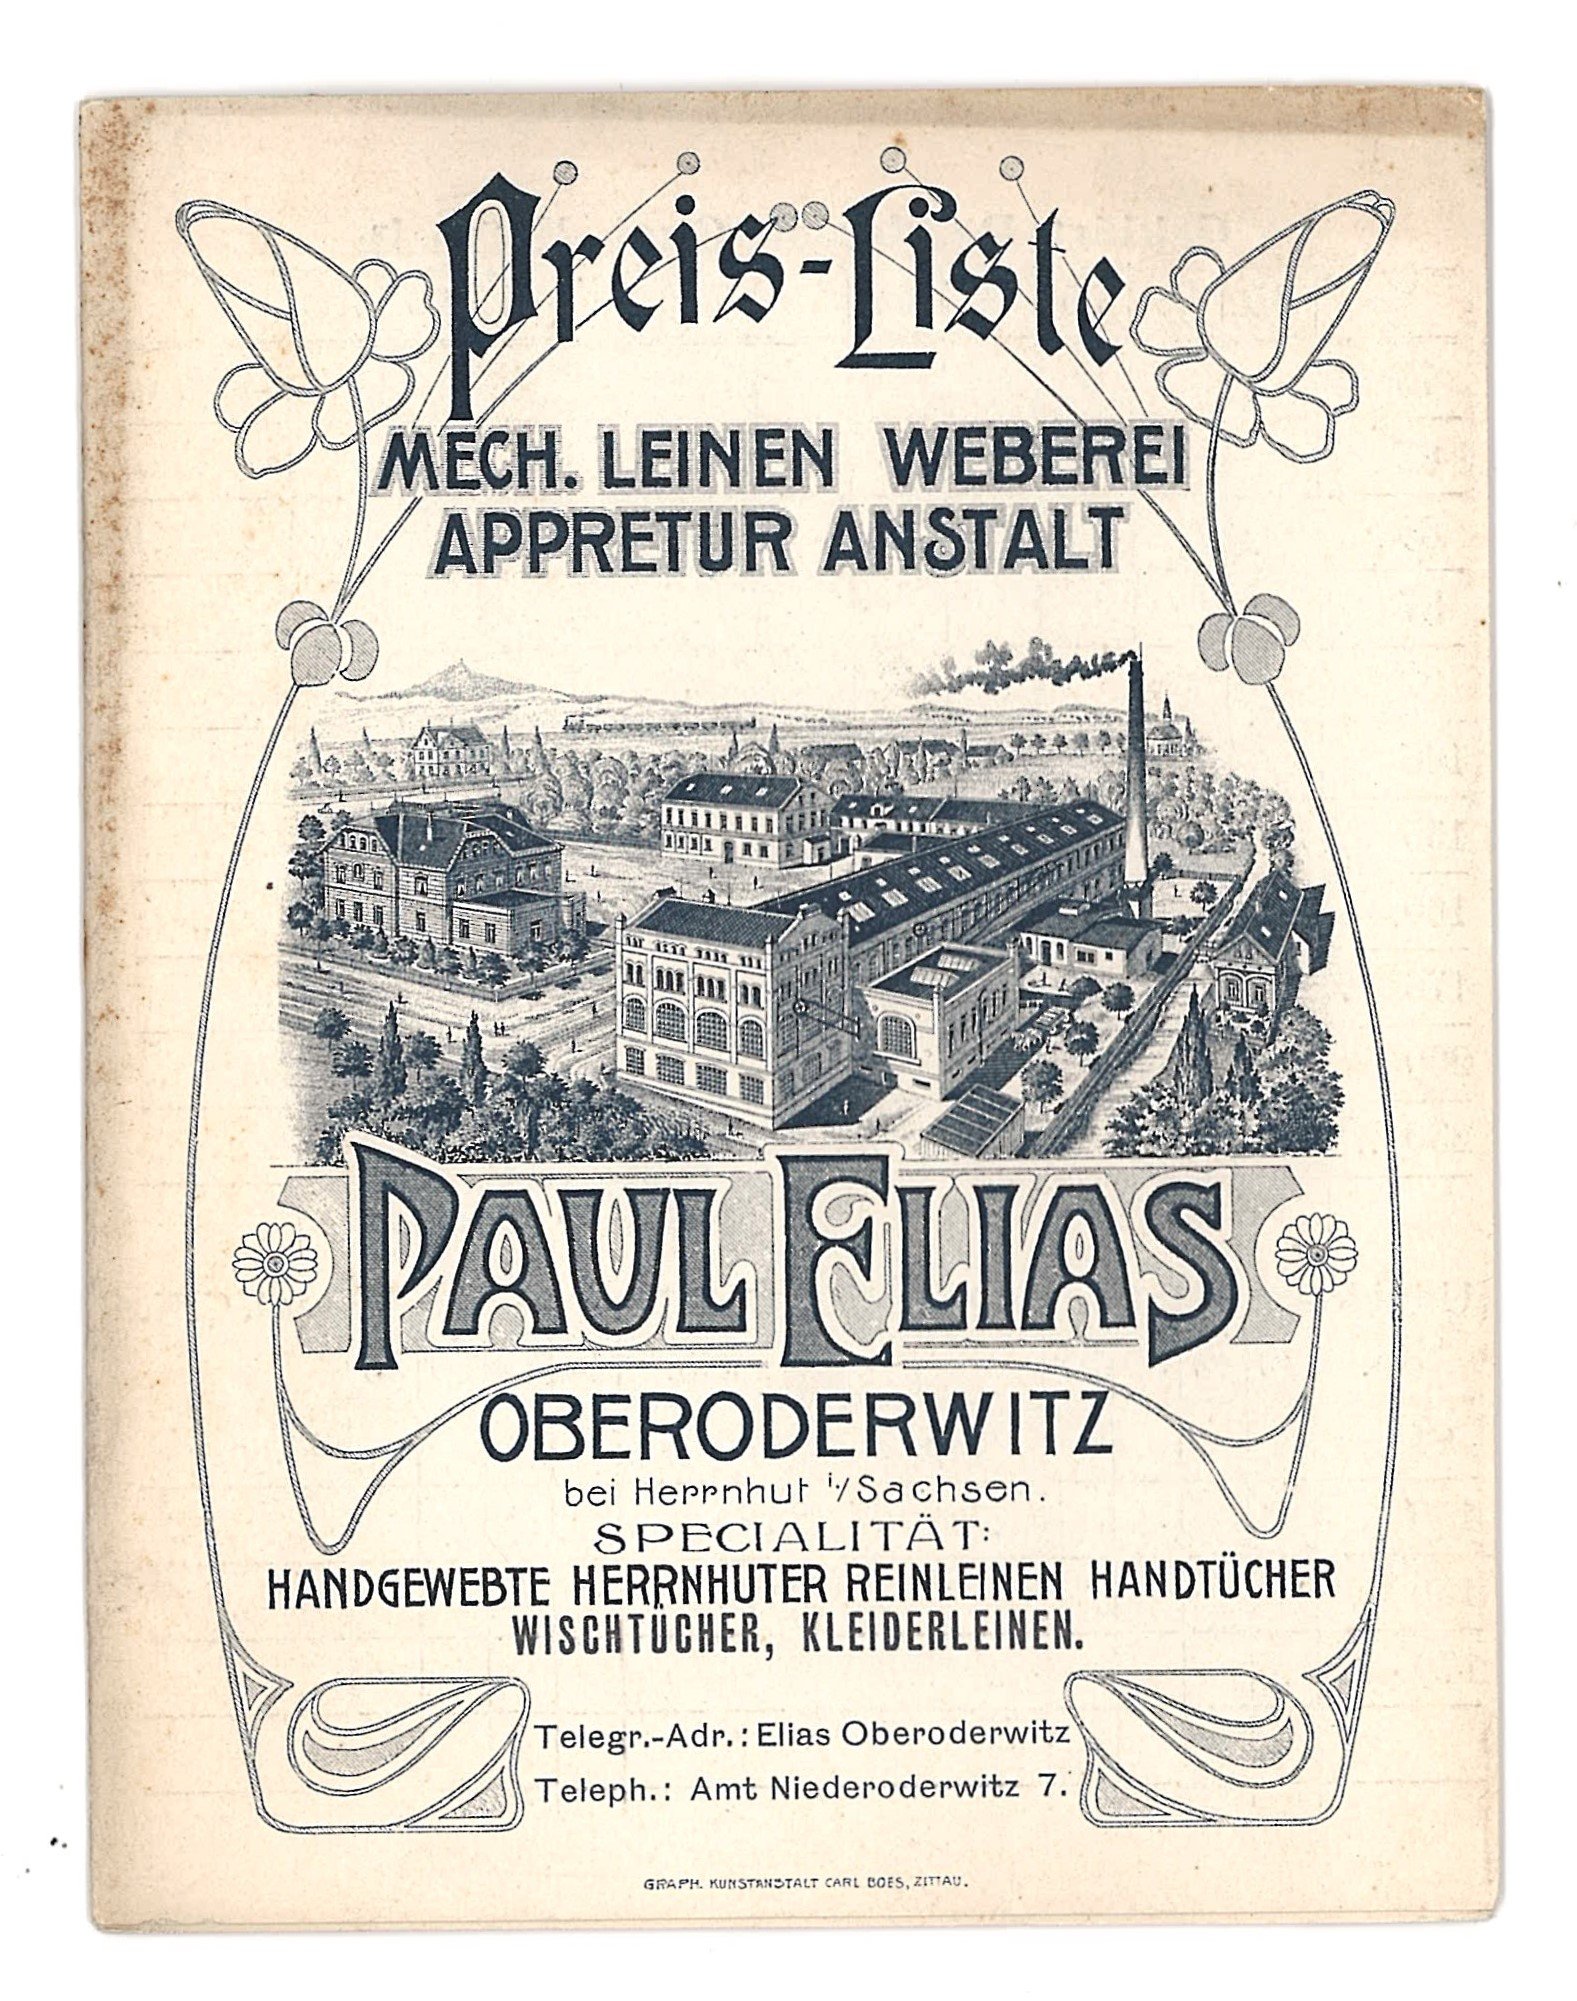 Preisliste der Firma Paul Elias Oberoderwitz (Deutsches Damast- und Frottiermuseum CC BY-NC-SA)